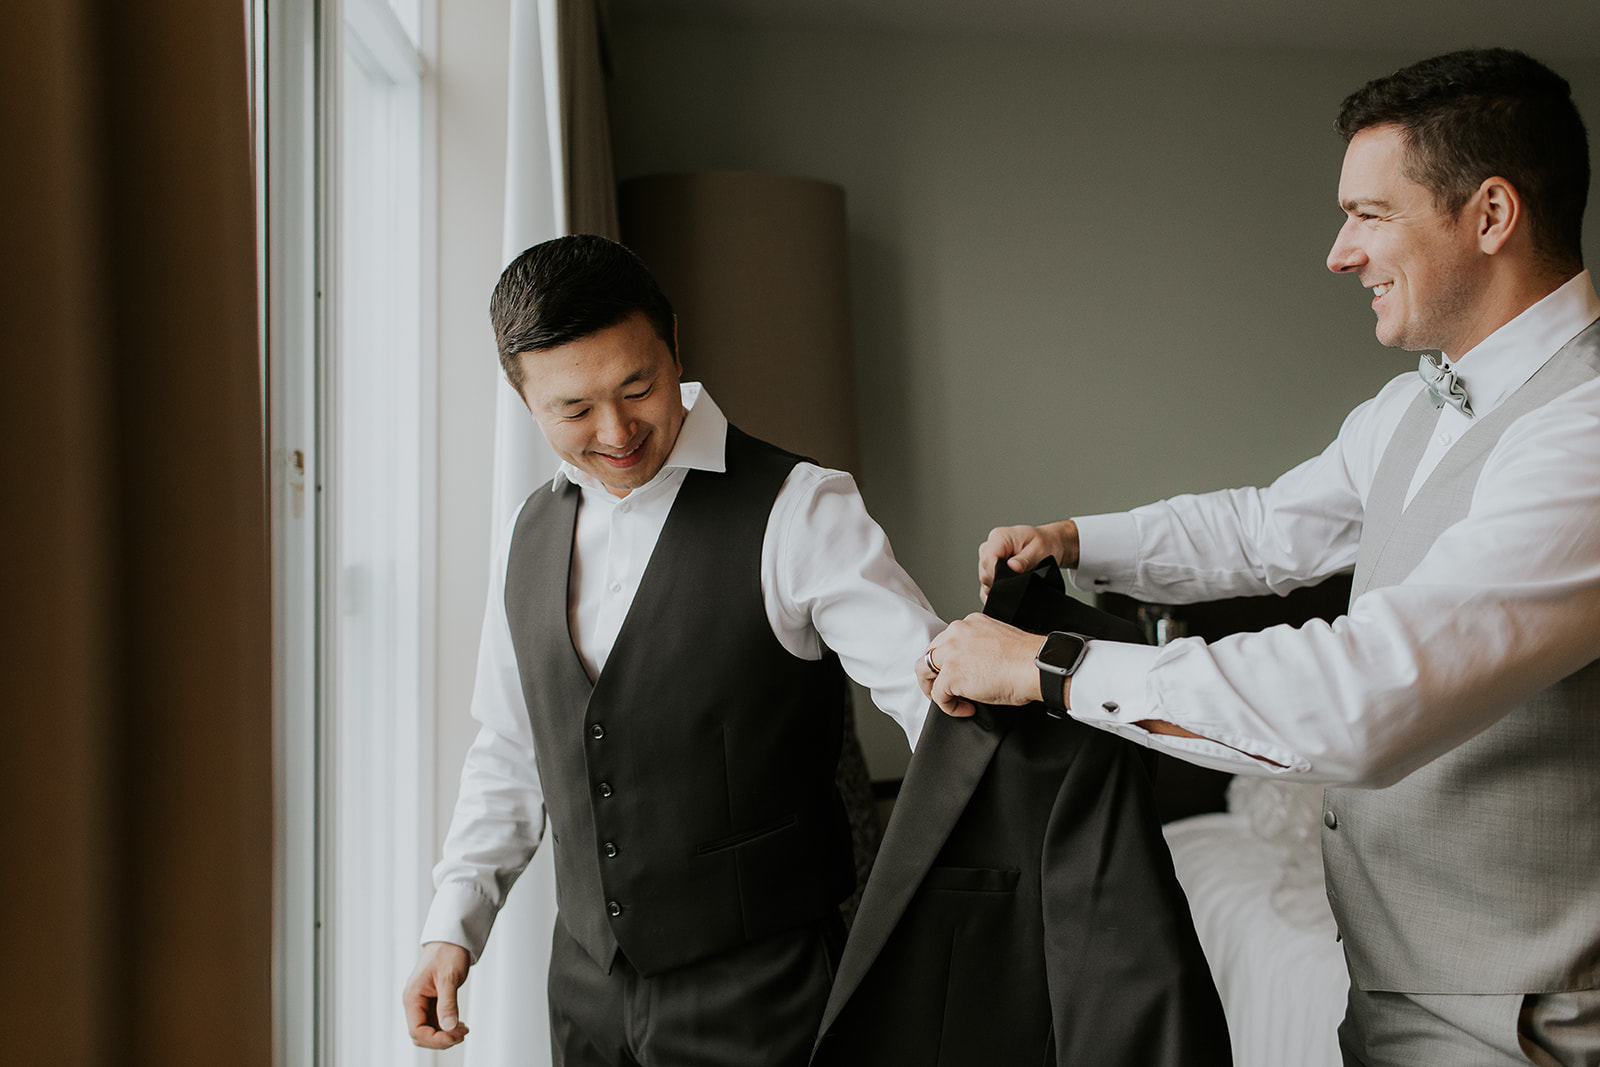 a groomsmen helps a groom get his suit jacket on